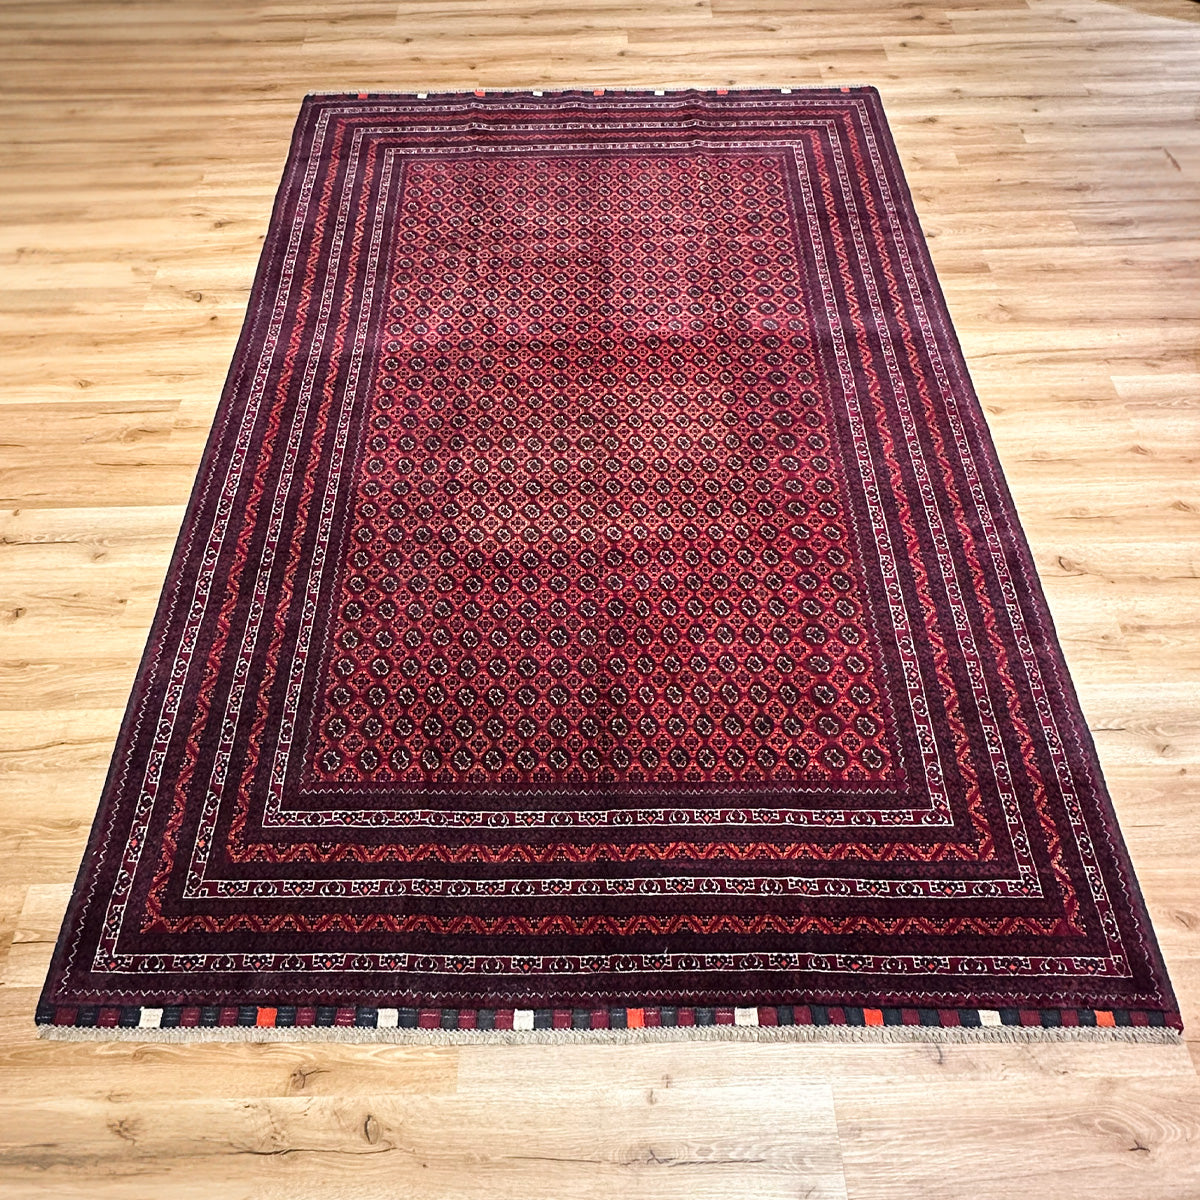 שטיח אפגני באשיר 00 צבעוני 296*200